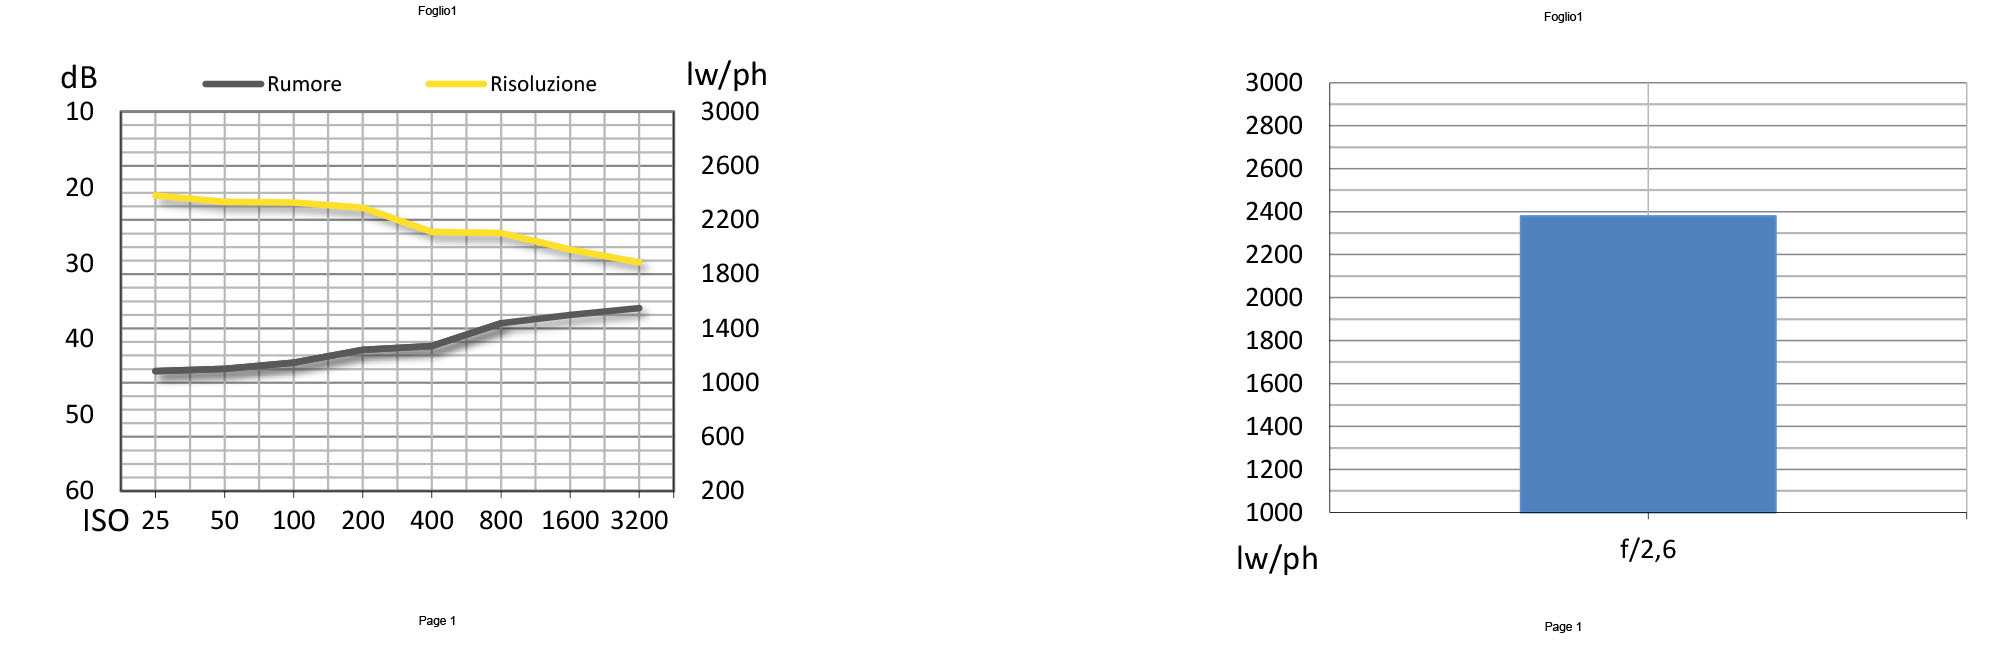 L’andamento della risoluzione è lineare fino a 200 ISO, infatti a 400 ISO c’è un picco nella sua riduzione a causa di un corrispondente calo nella aggressività del filtro di riduzione rumore. La risoluzione si avvicina alle 2400 lw/ph, un valore capace di garantire stampe anche di grandi dimensioni.